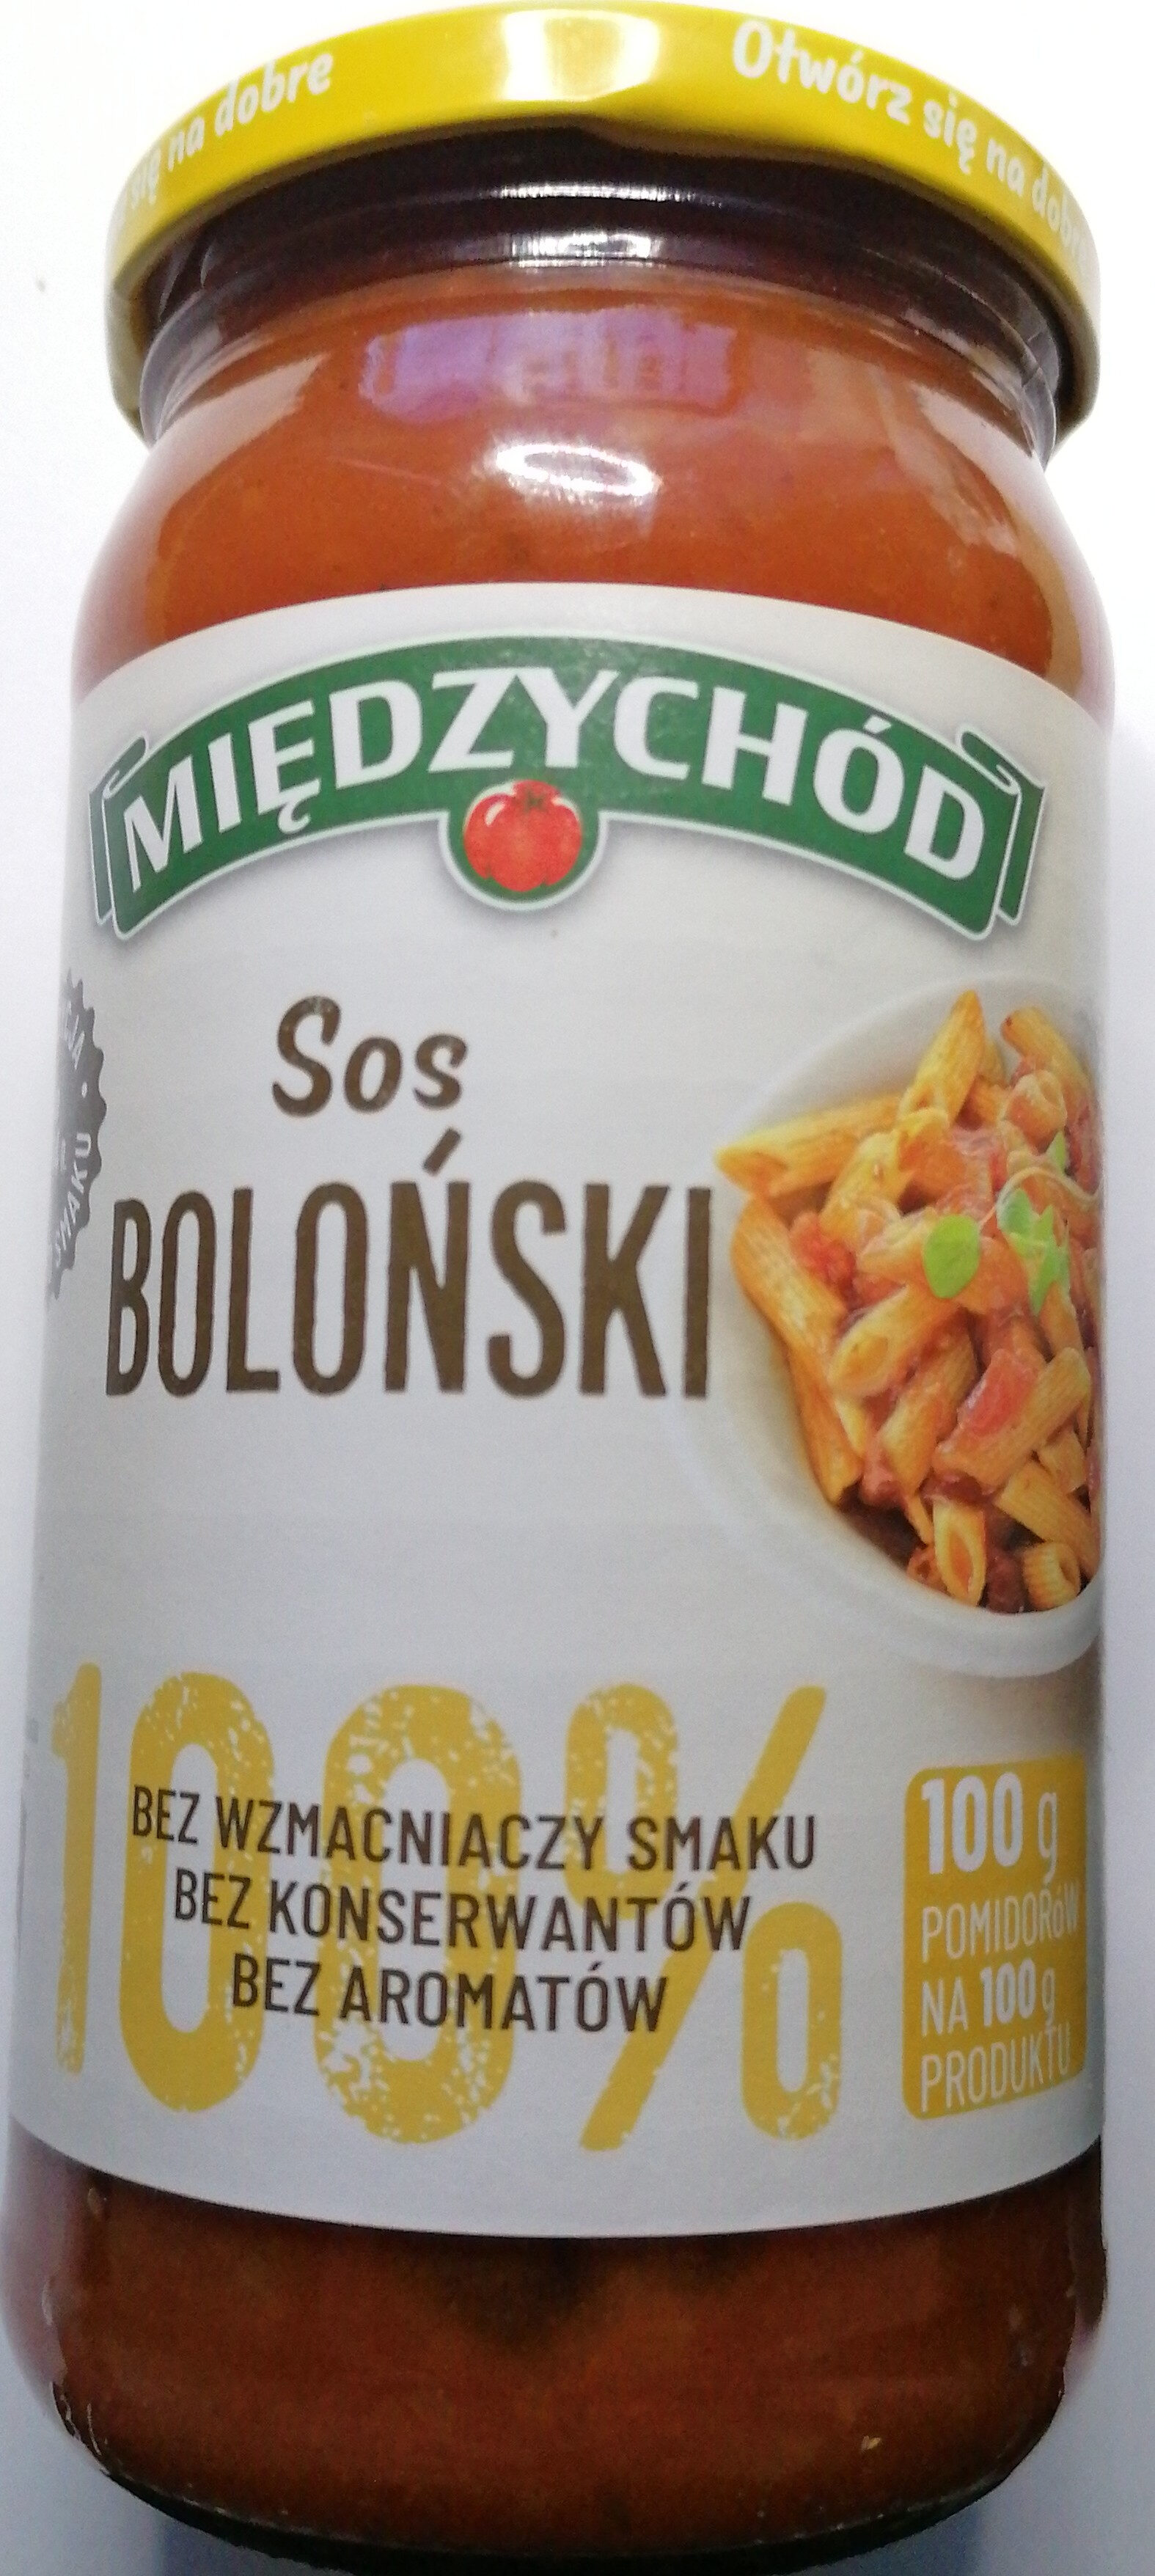 Sos Boloński - Product - pl